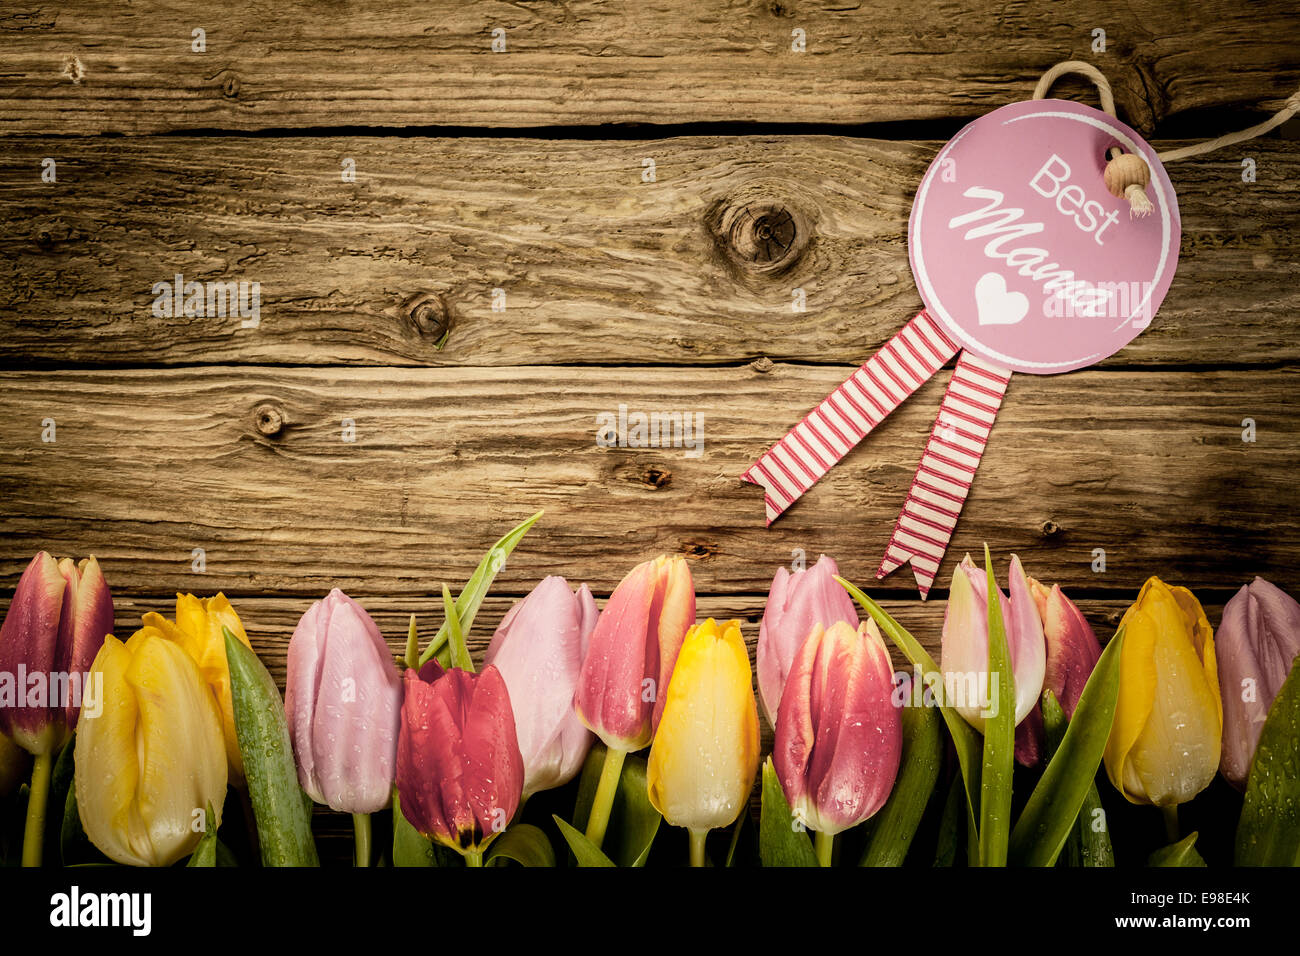 La festa della mamma o bambino, doccia, saluto con un confine di freschi tulipani colorati disposti in linea su una texture di rustiche tavole di legno con copyspace Foto Stock